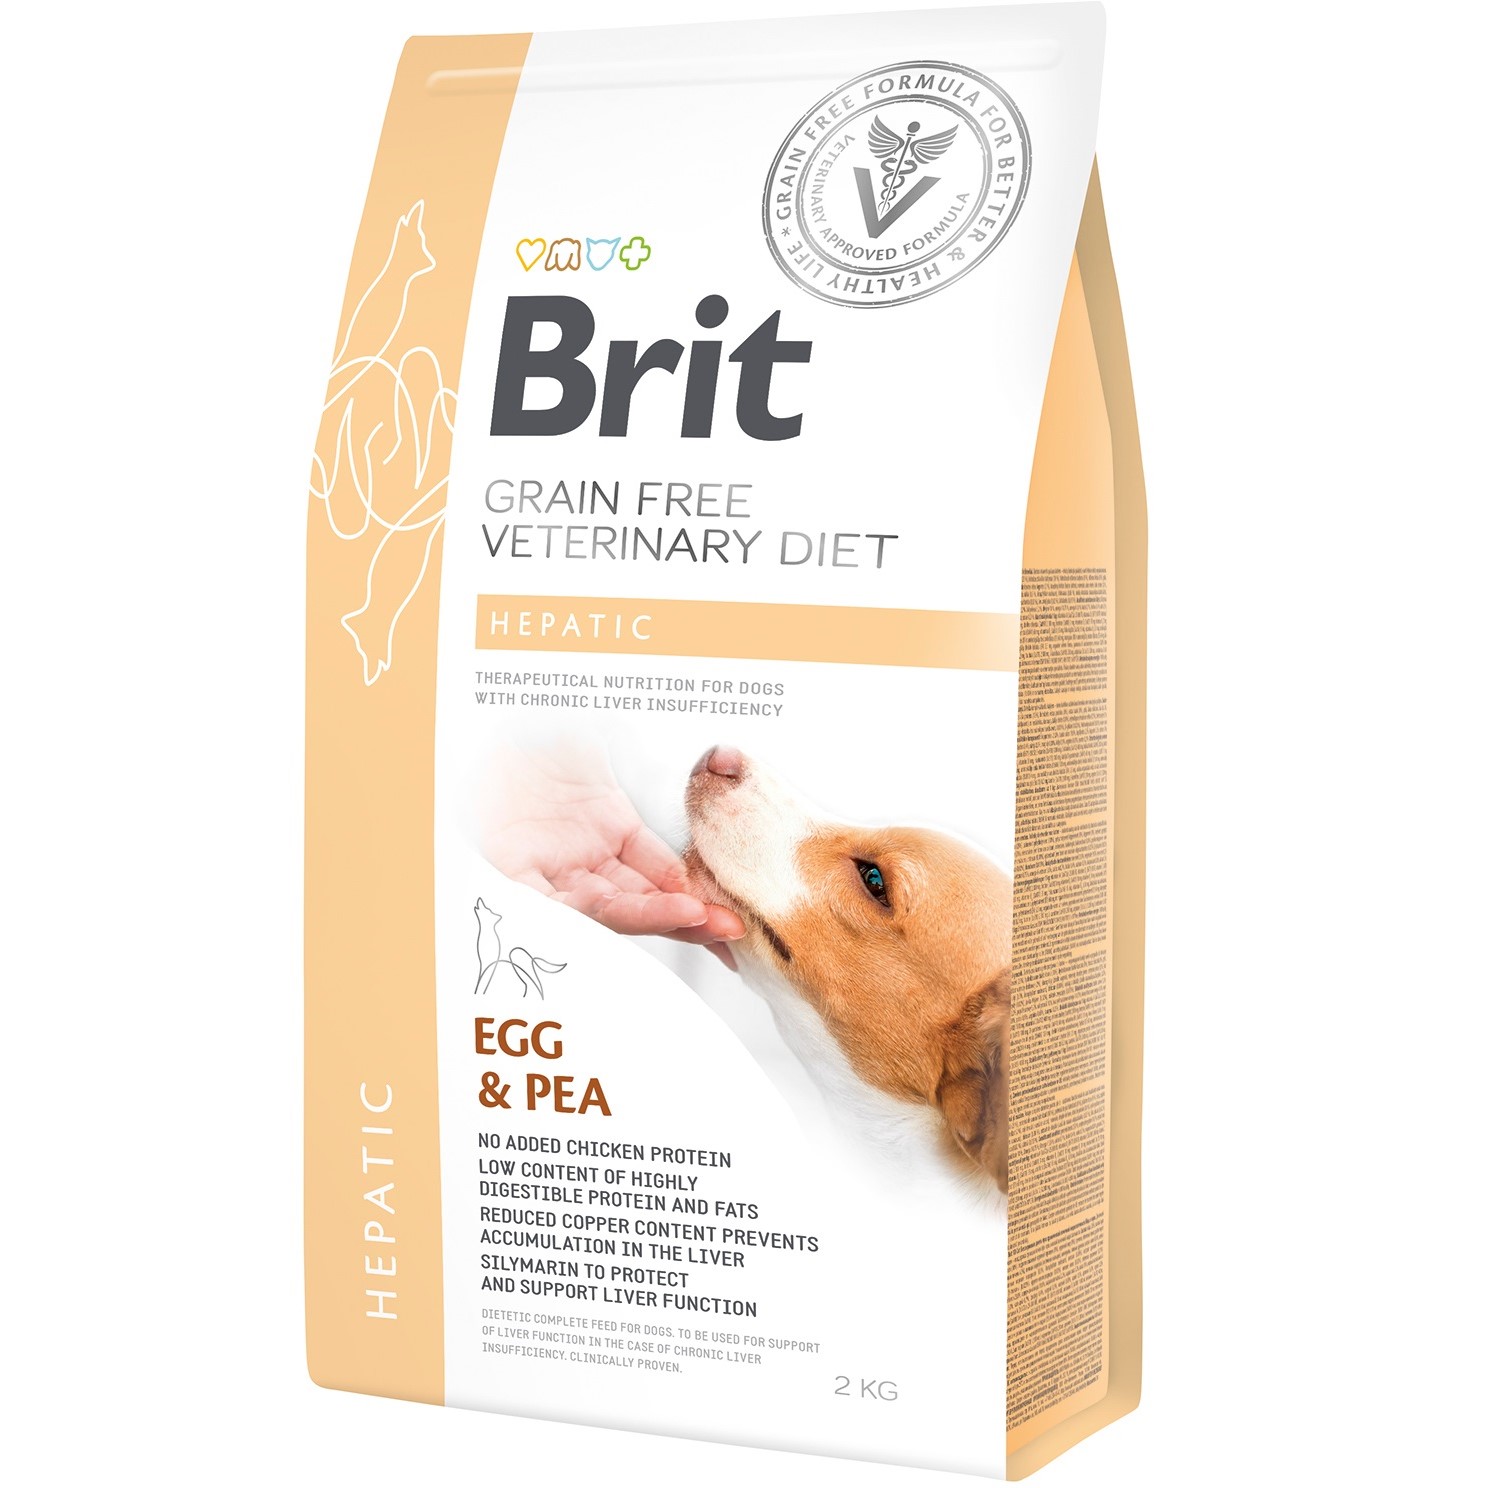 Сухой корм для взрослых собак Brit VetDiets Grain Free Hepatic при болезни печени с яйцом, горохом, бататом и гречкой 2 кг - фото 1